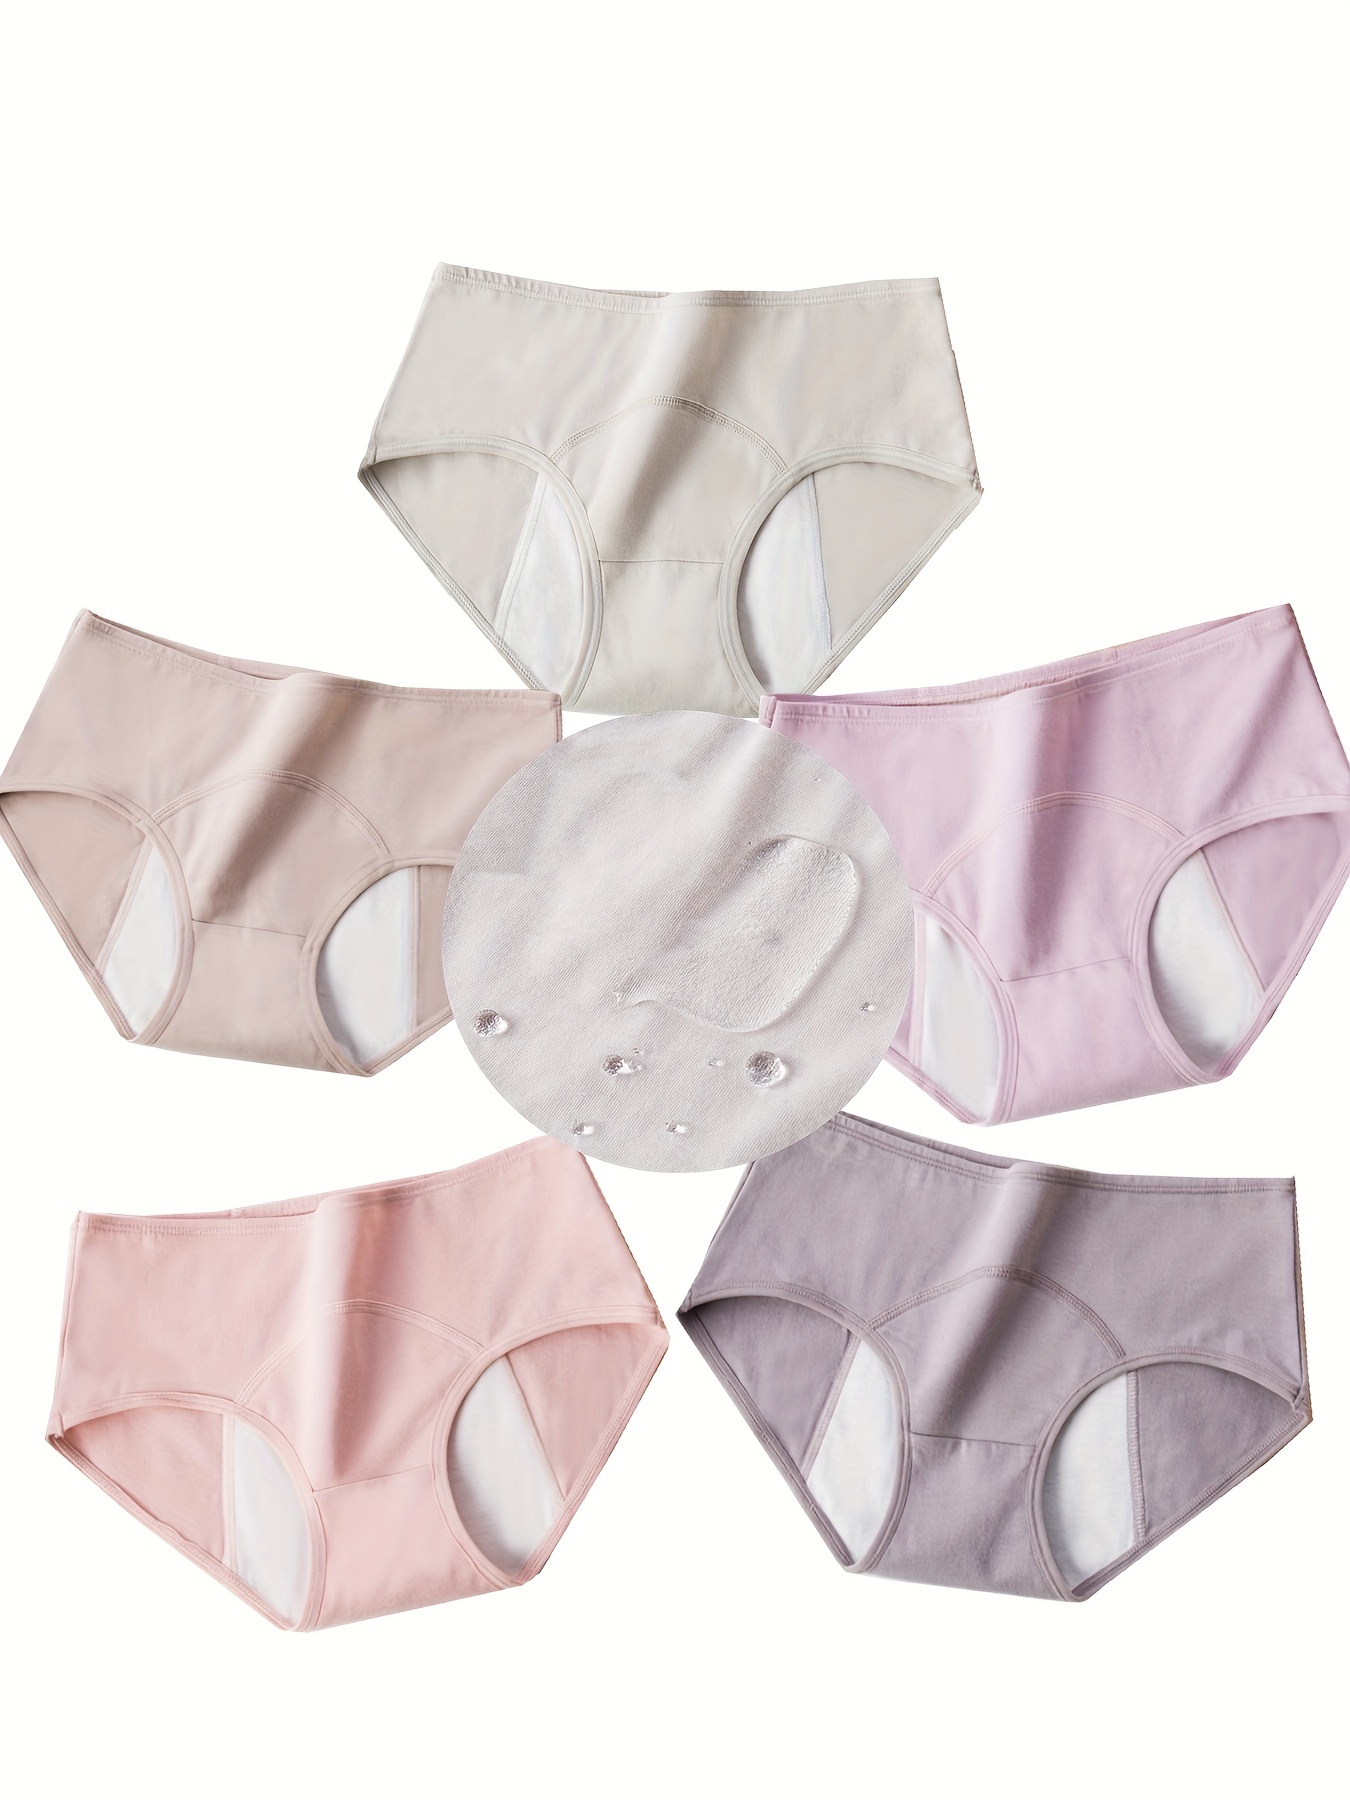 Girls underwear small vest pure cotton development period 9-12